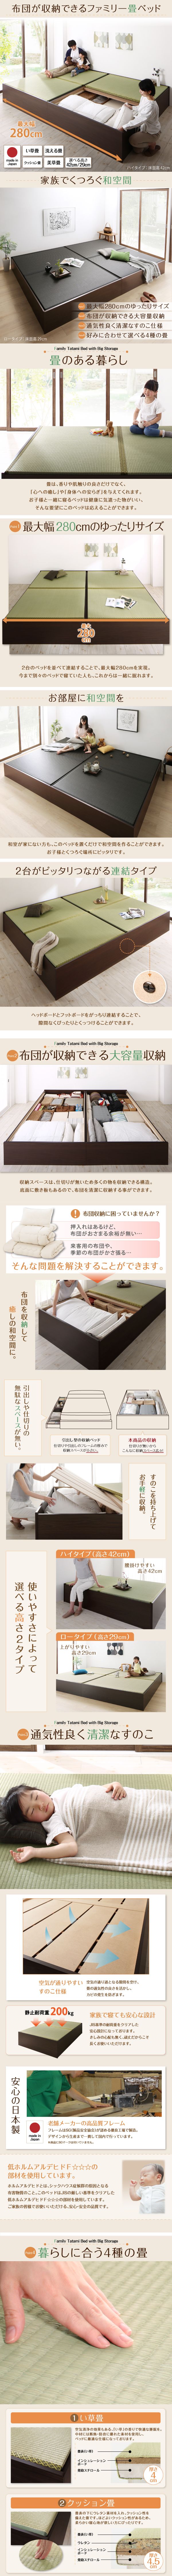 日本製・布団が収納できる大容量収納畳連結ベッド 陽葵 Himari ひまり